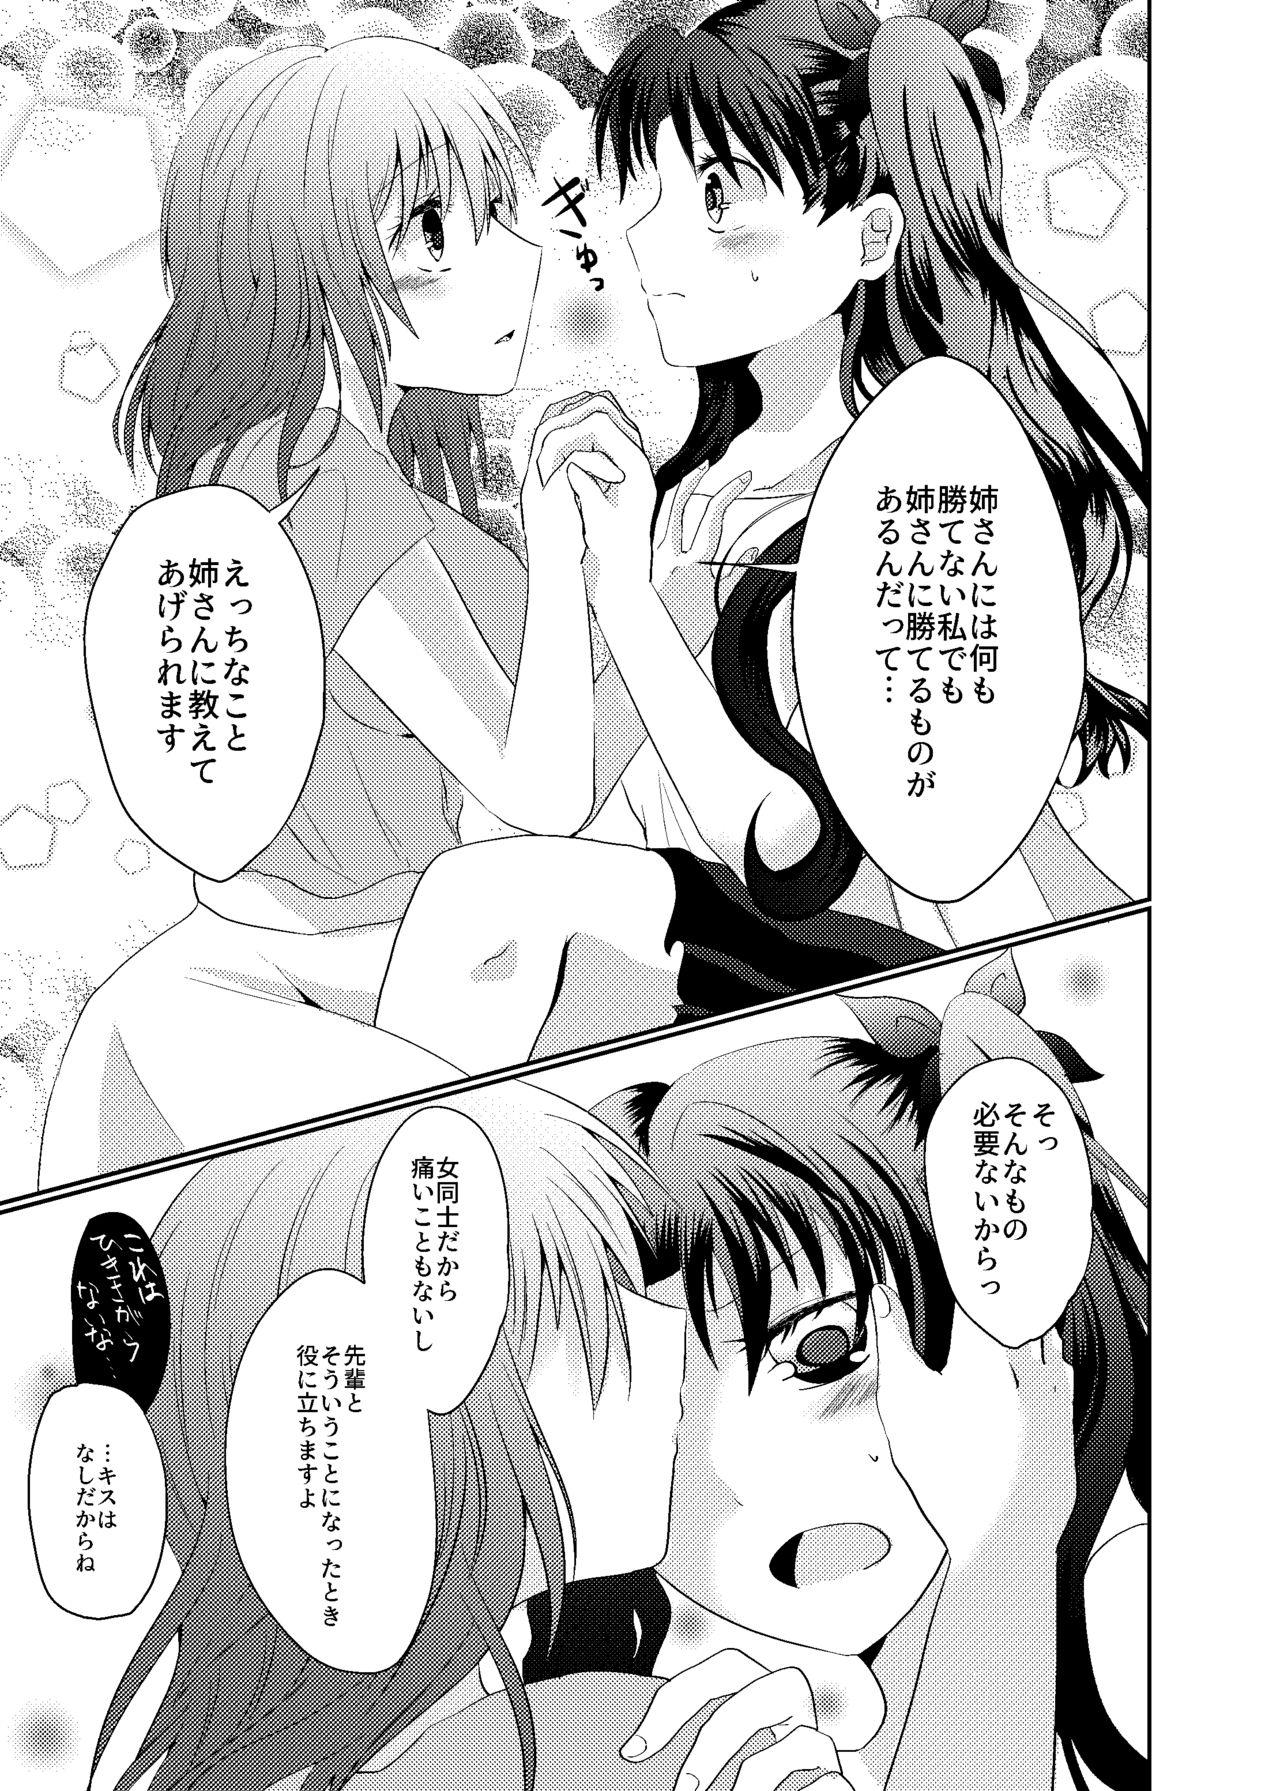 Chicks Tosaka Shimai no Atsui Natsu - Fate stay night 3some - Page 7